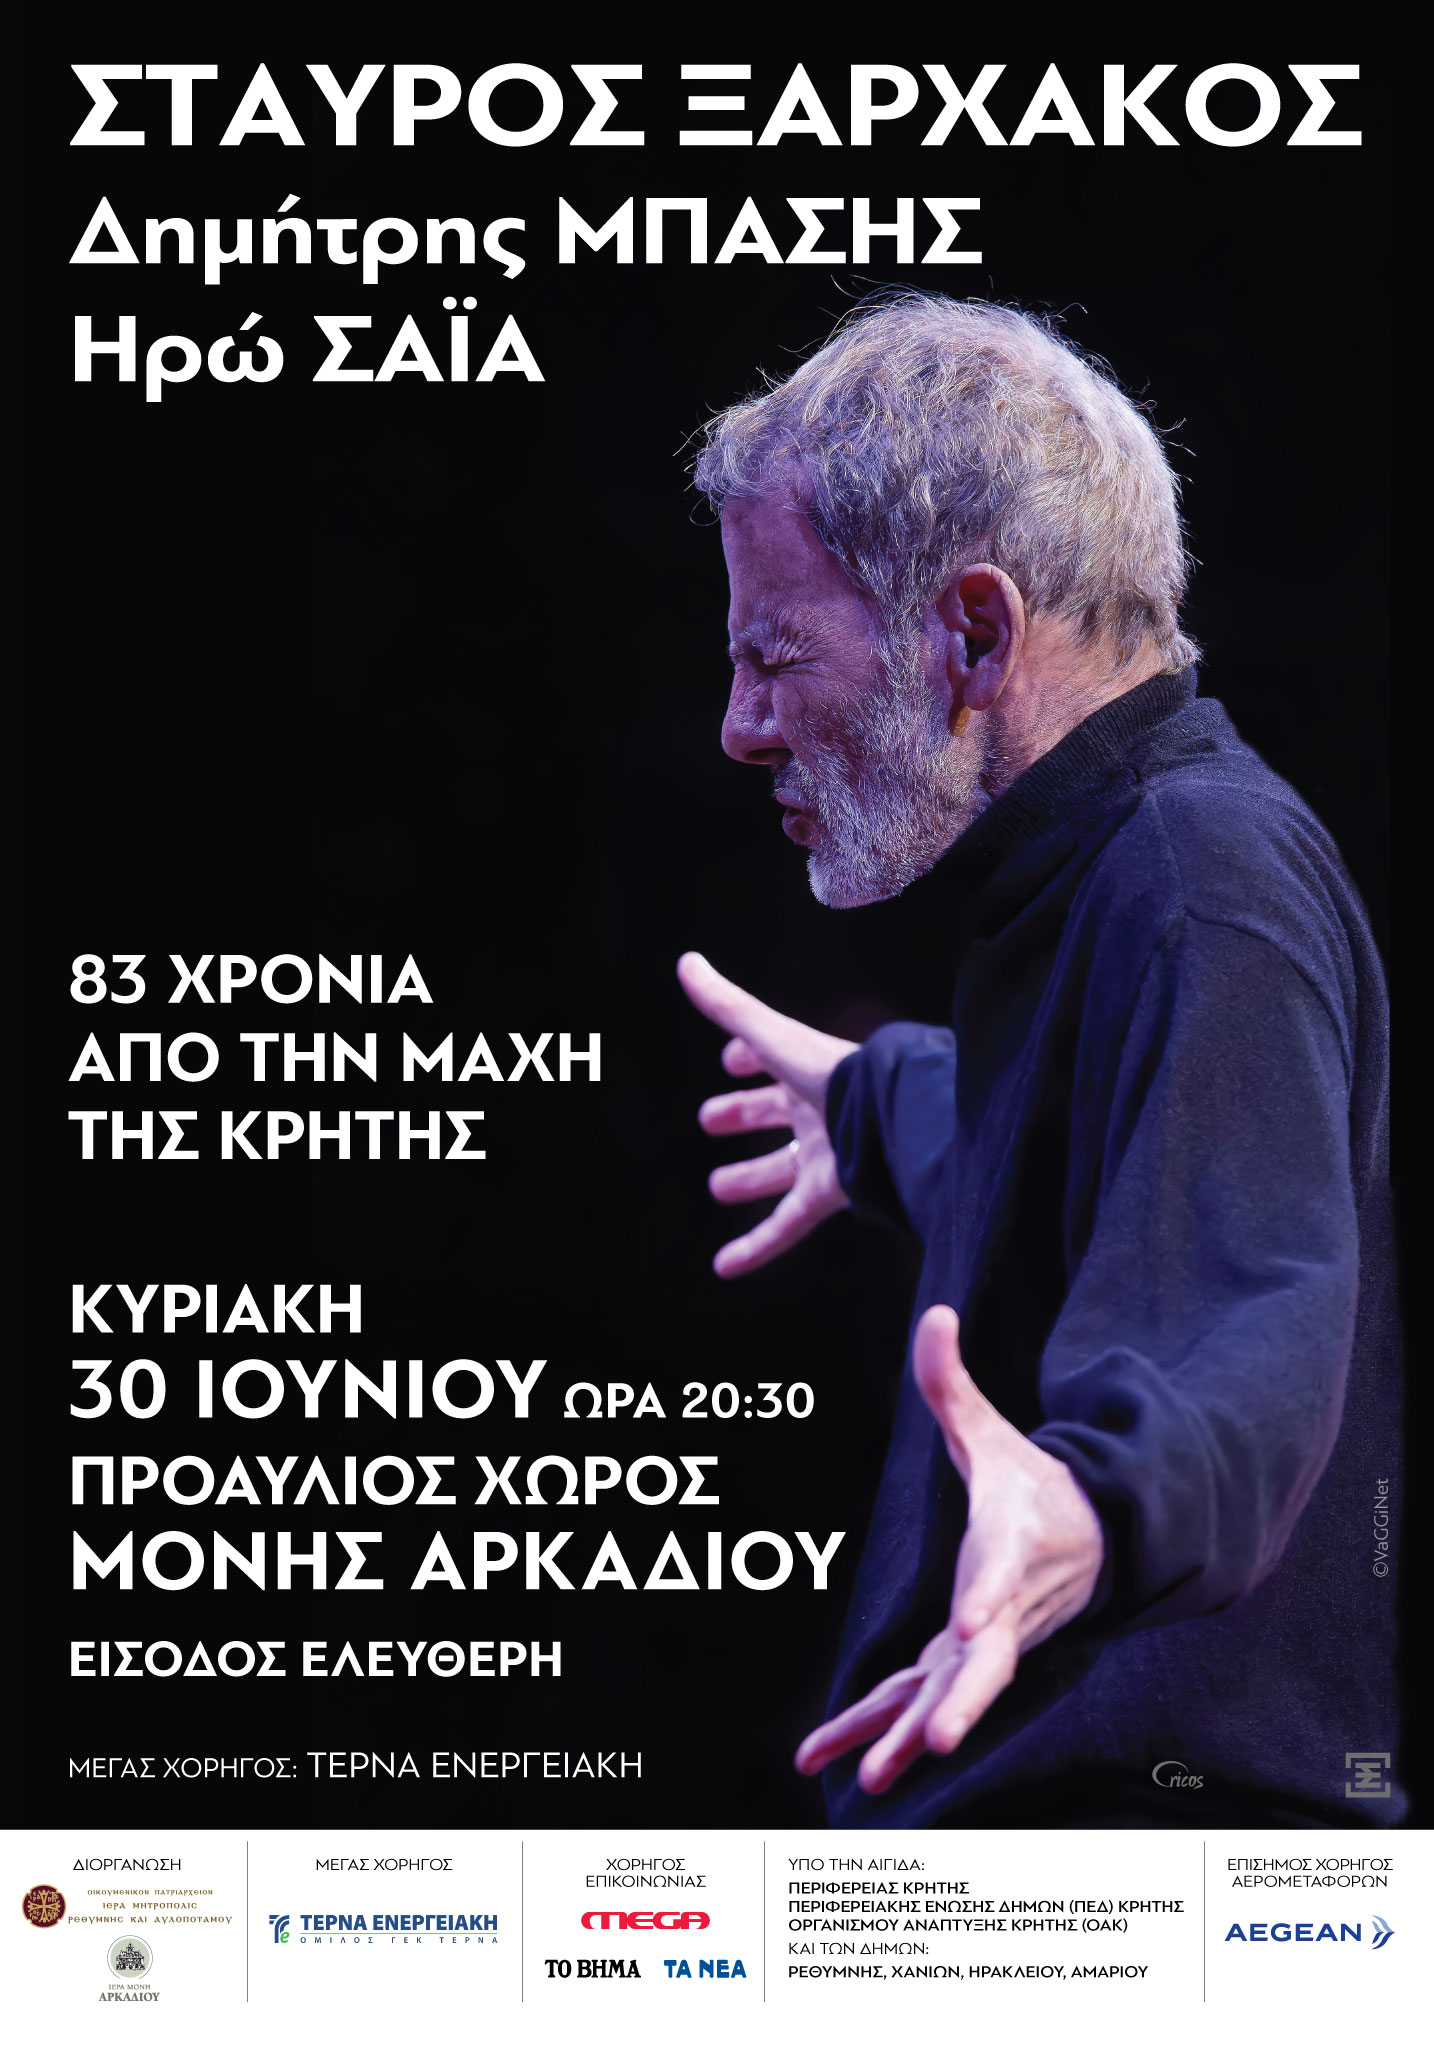 ΑΚΥΡΩΘΗΚΕ: Σταύρος Ξαρχάκος – Συναυλία στη Μονή Αρκαδίου